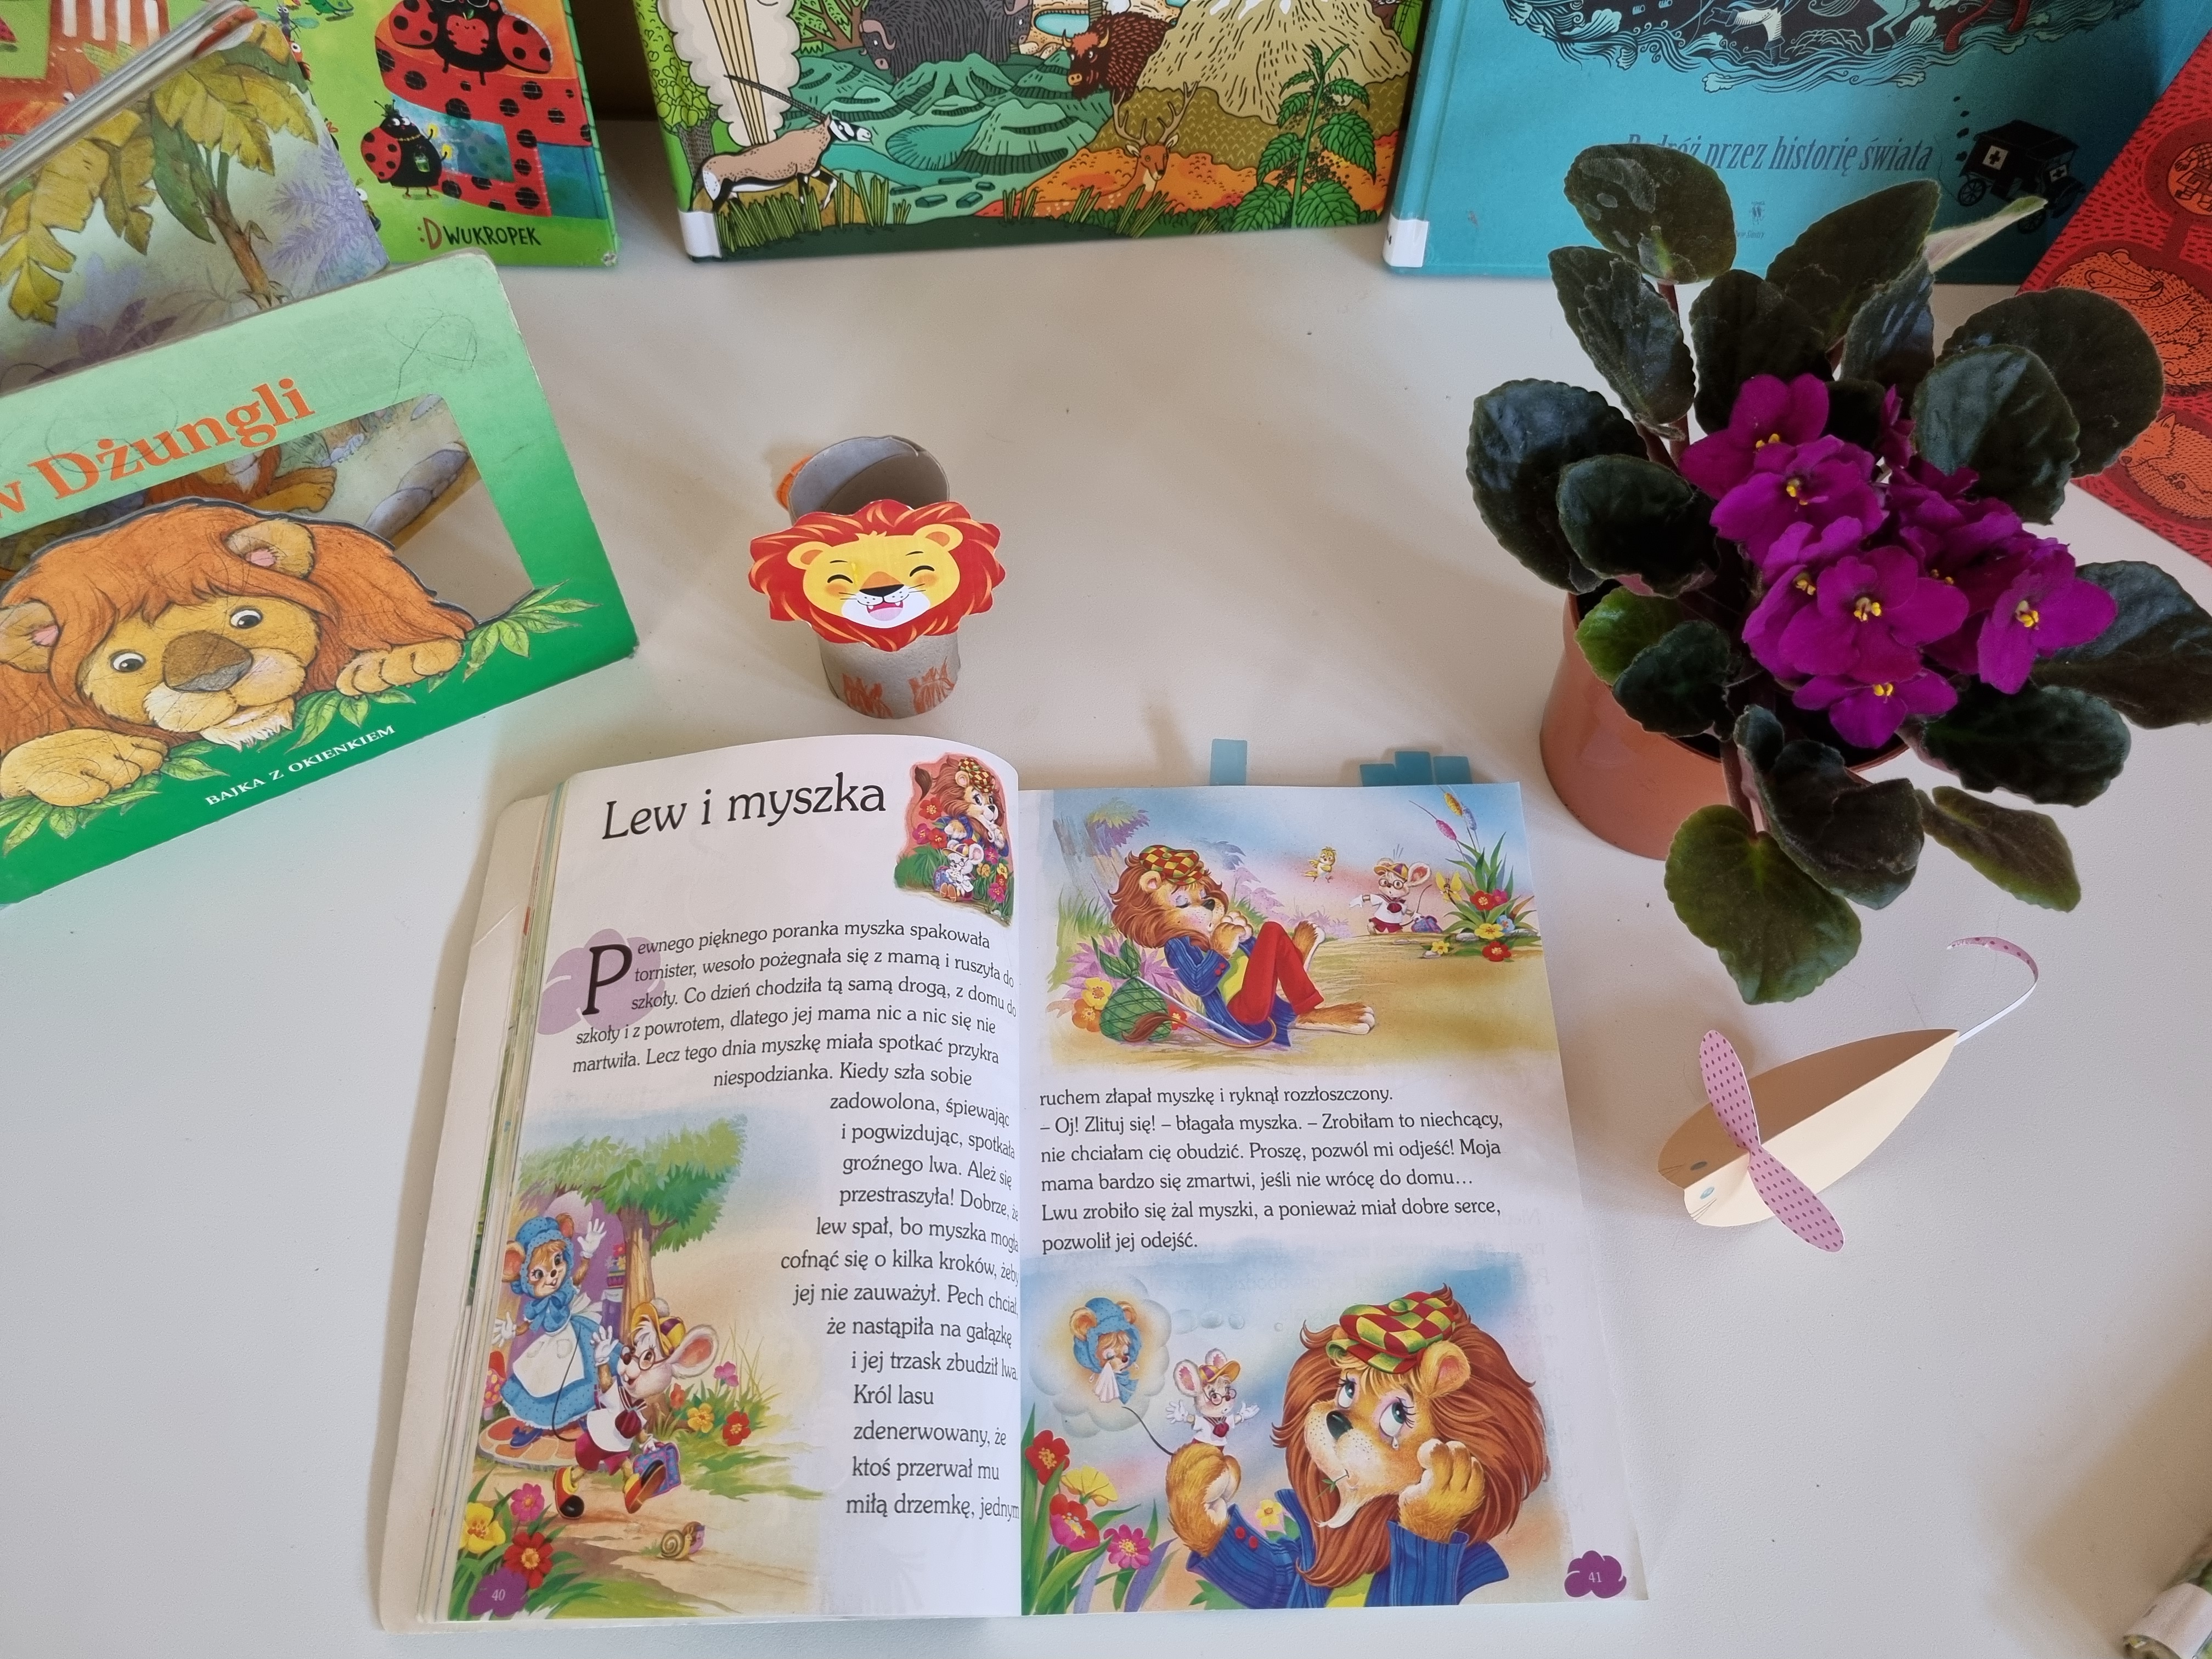 Na białym stole leży otwarta książka z opowiadaniem zatytułowanym "Lew i myszka". Wokół znajdują się inne książki oraz ozdoby z papieru przedstawiające lwy.